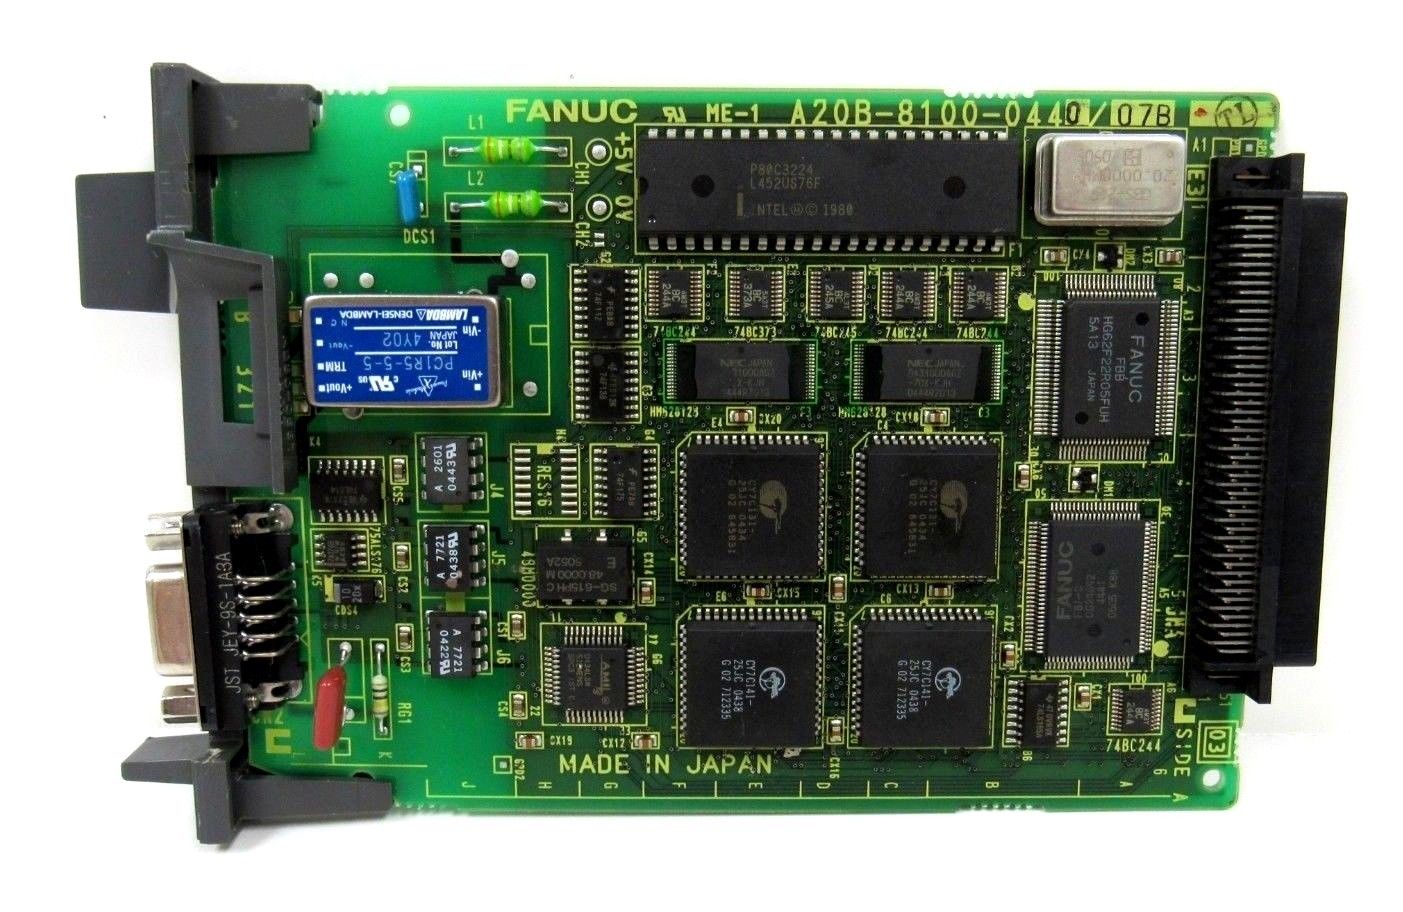 木造 FANUC A20B-2900-0500/04B Memory Module A20B2900050004B 